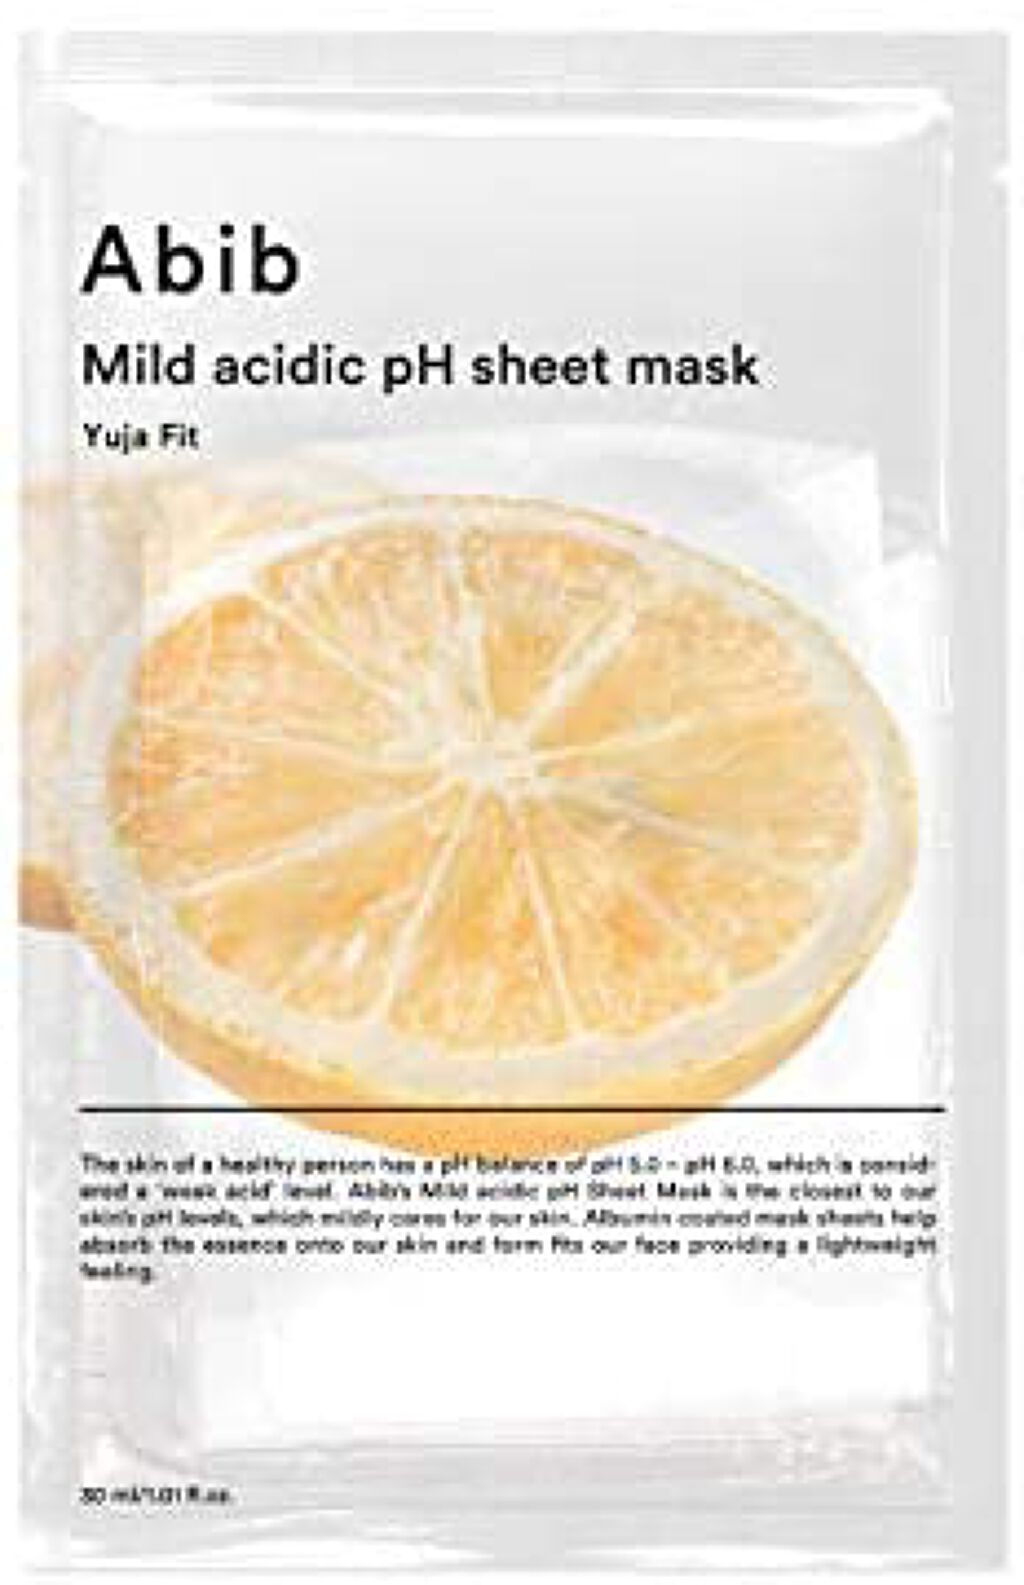 試してみた】Mild acidic pH sheet mask Yuja fit／Abib のリアルな口コミ・レビュー | LIPS